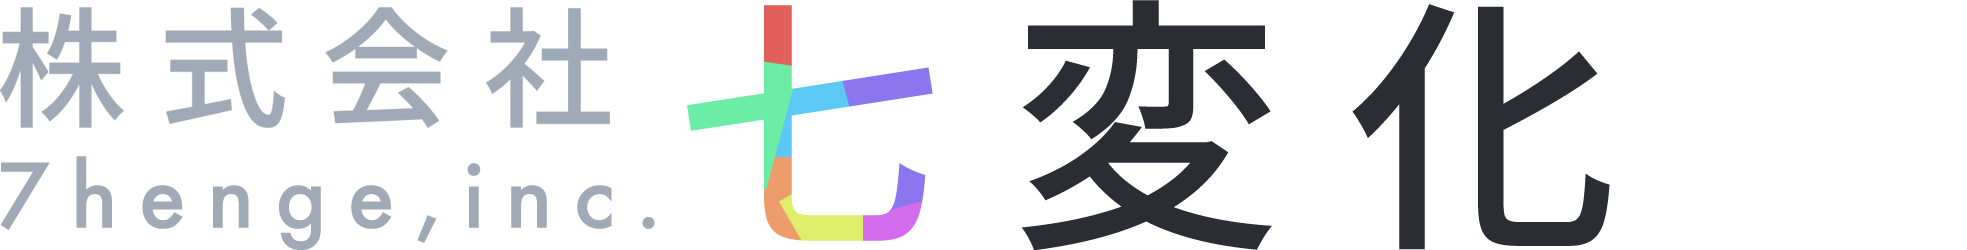 株式会社七変化のコーポレートロゴ